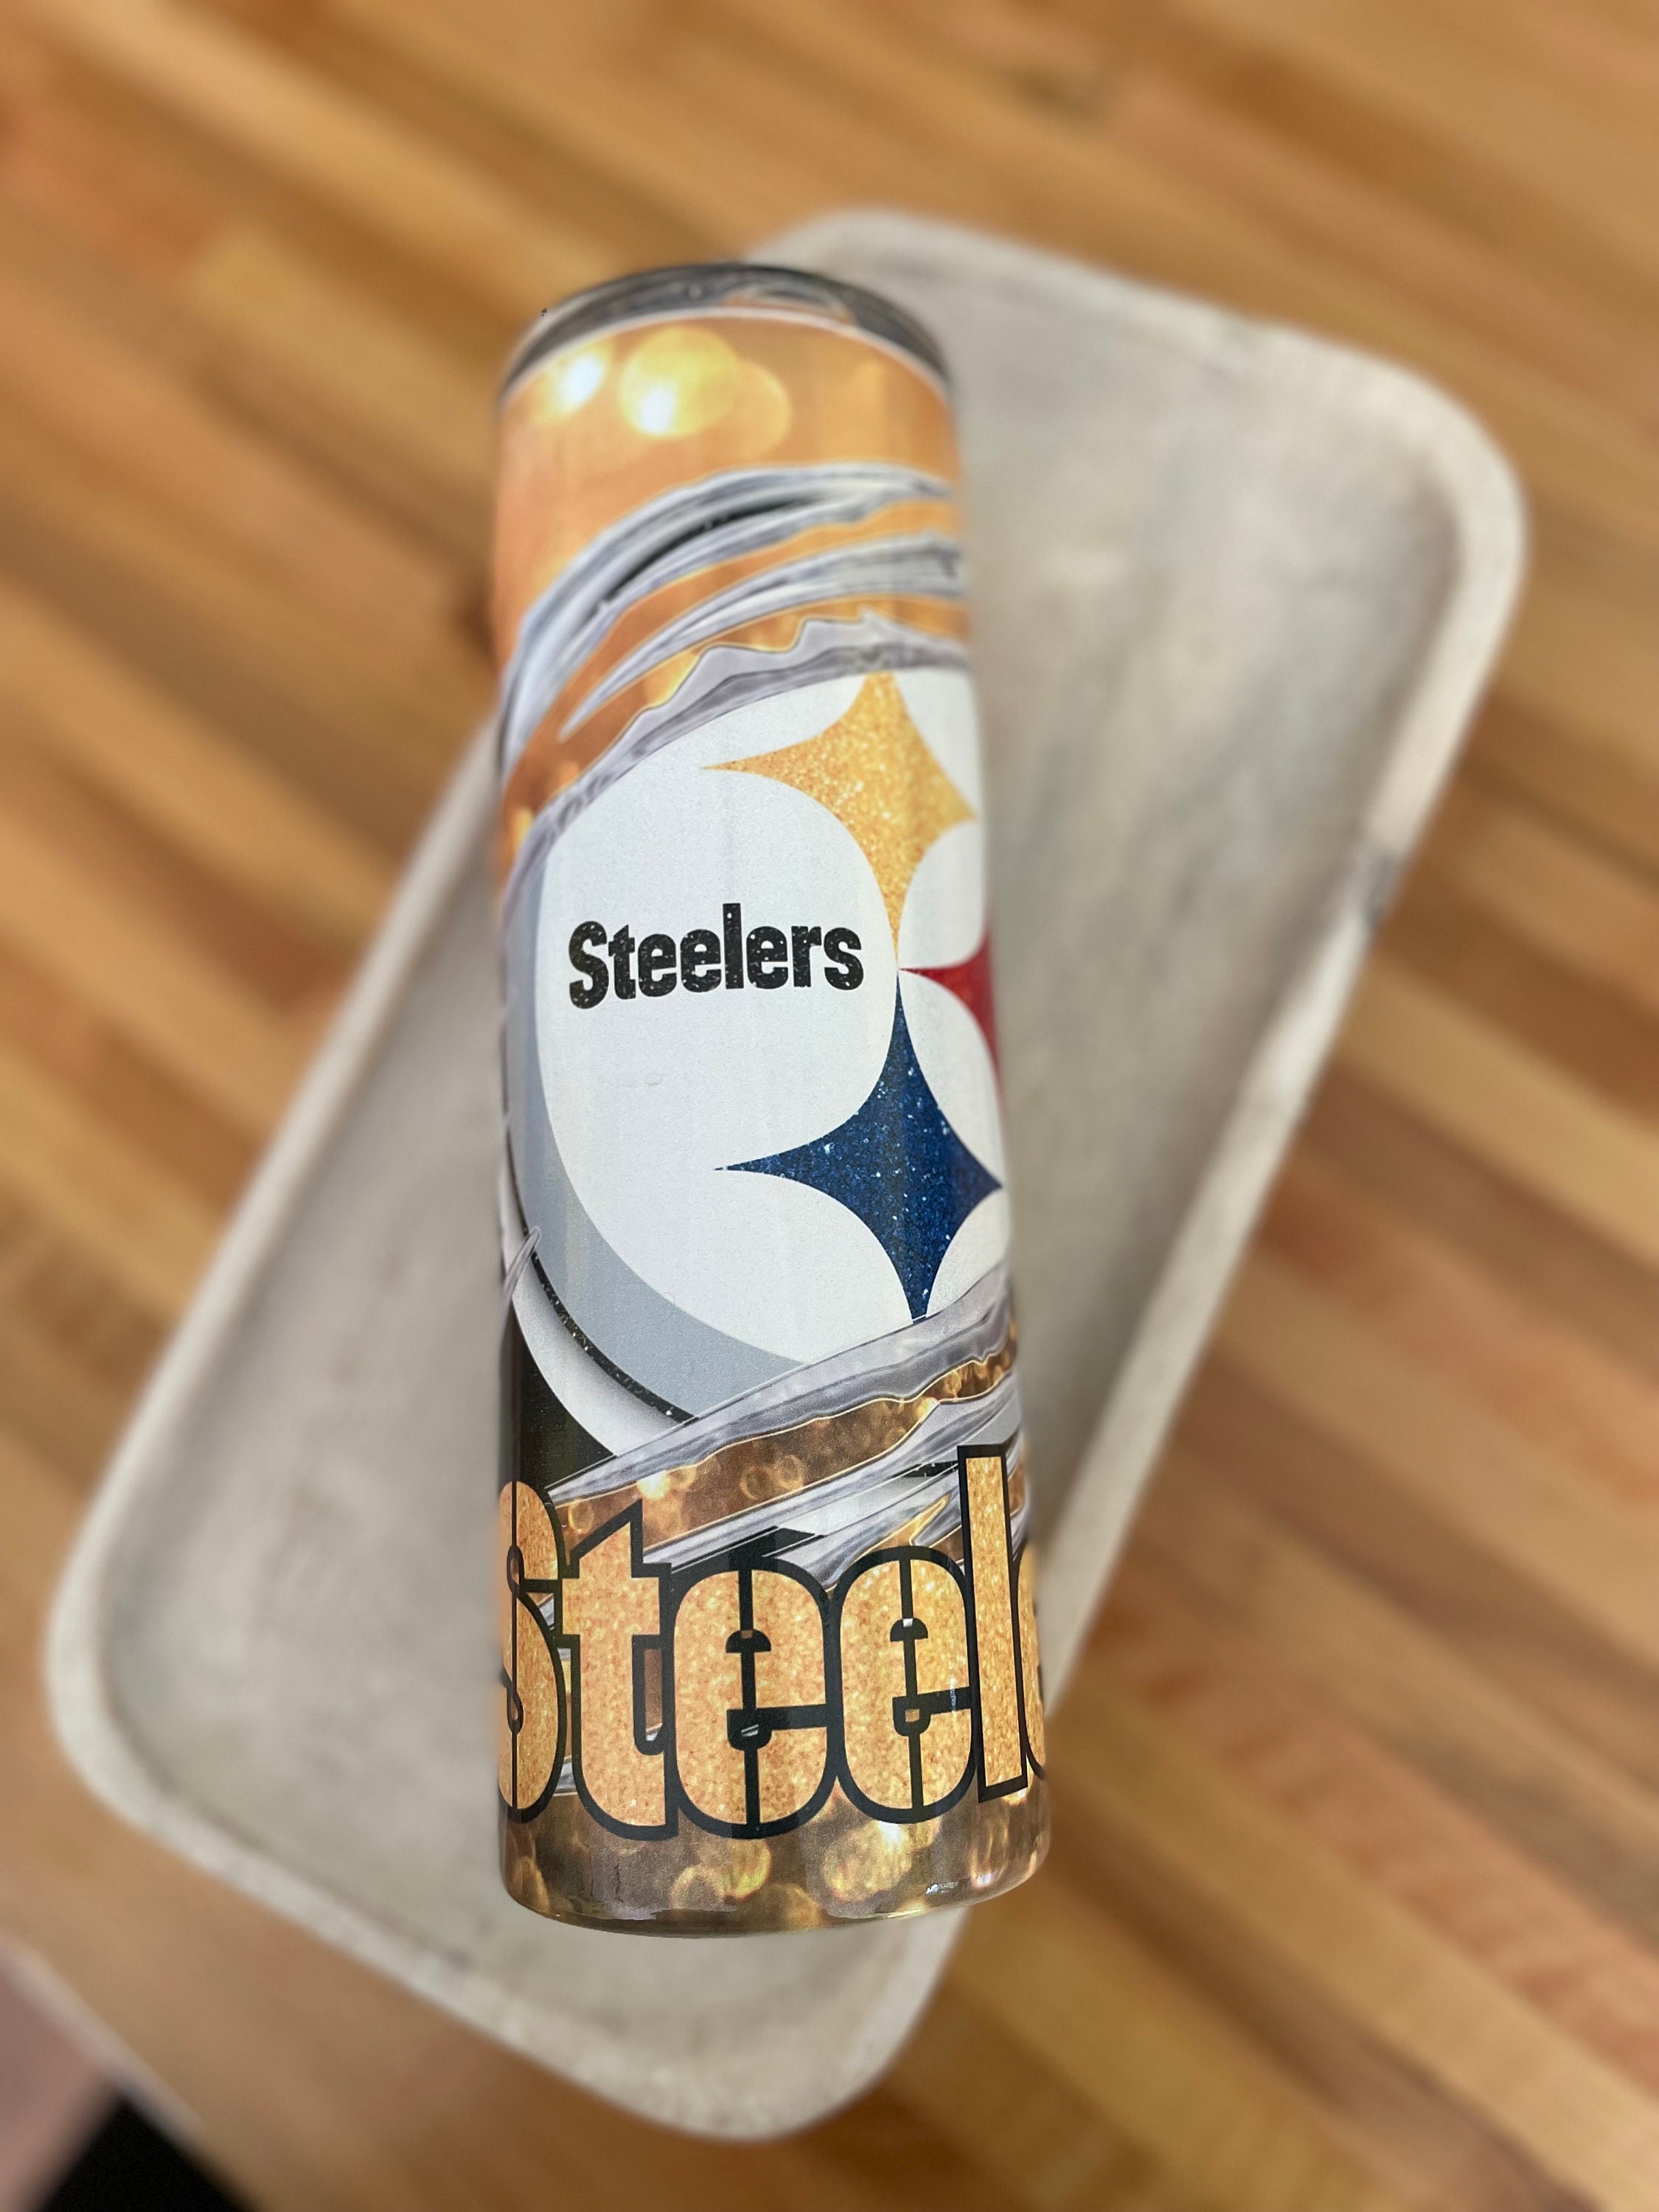 Pittsburg Steelers Inspired 20oz Stainless Steel Metal Tumbler 